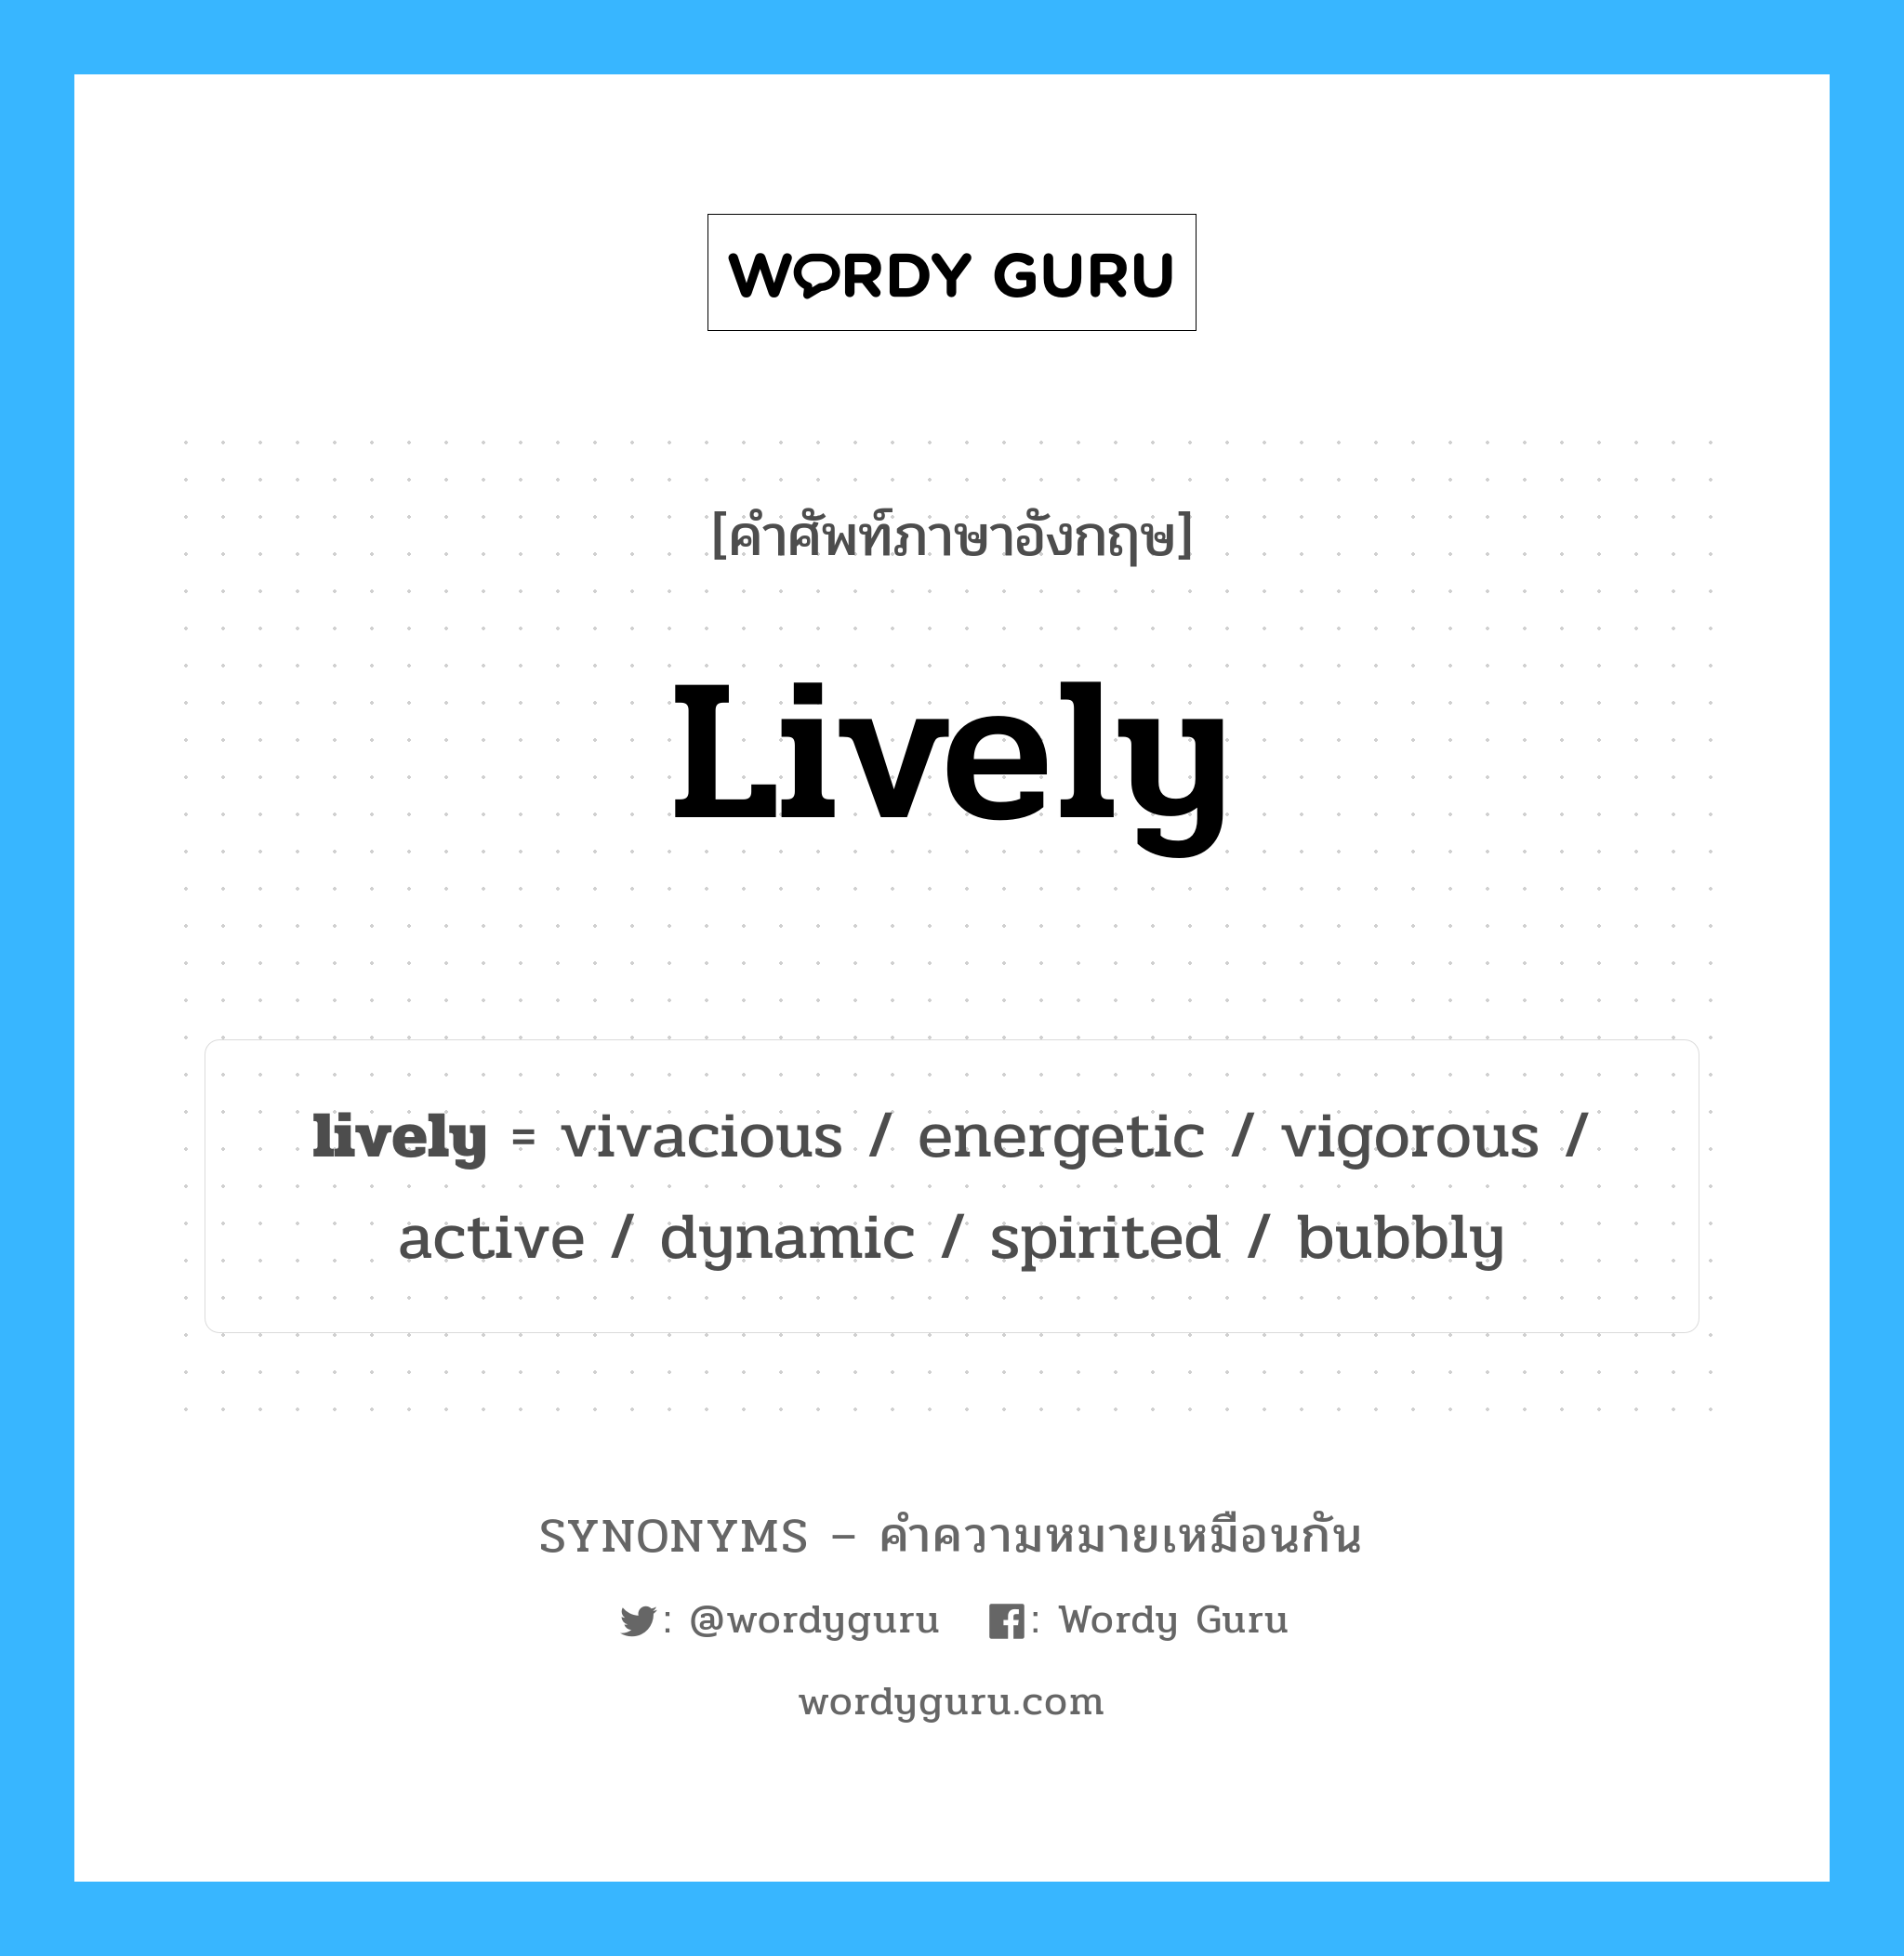 energetic เป็นหนึ่งใน lively และมีคำอื่น ๆ อีกดังนี้, คำศัพท์ภาษาอังกฤษ energetic ความหมายคล้ายกันกับ lively แปลว่า มีความกระตือรือร้น หมวด lively